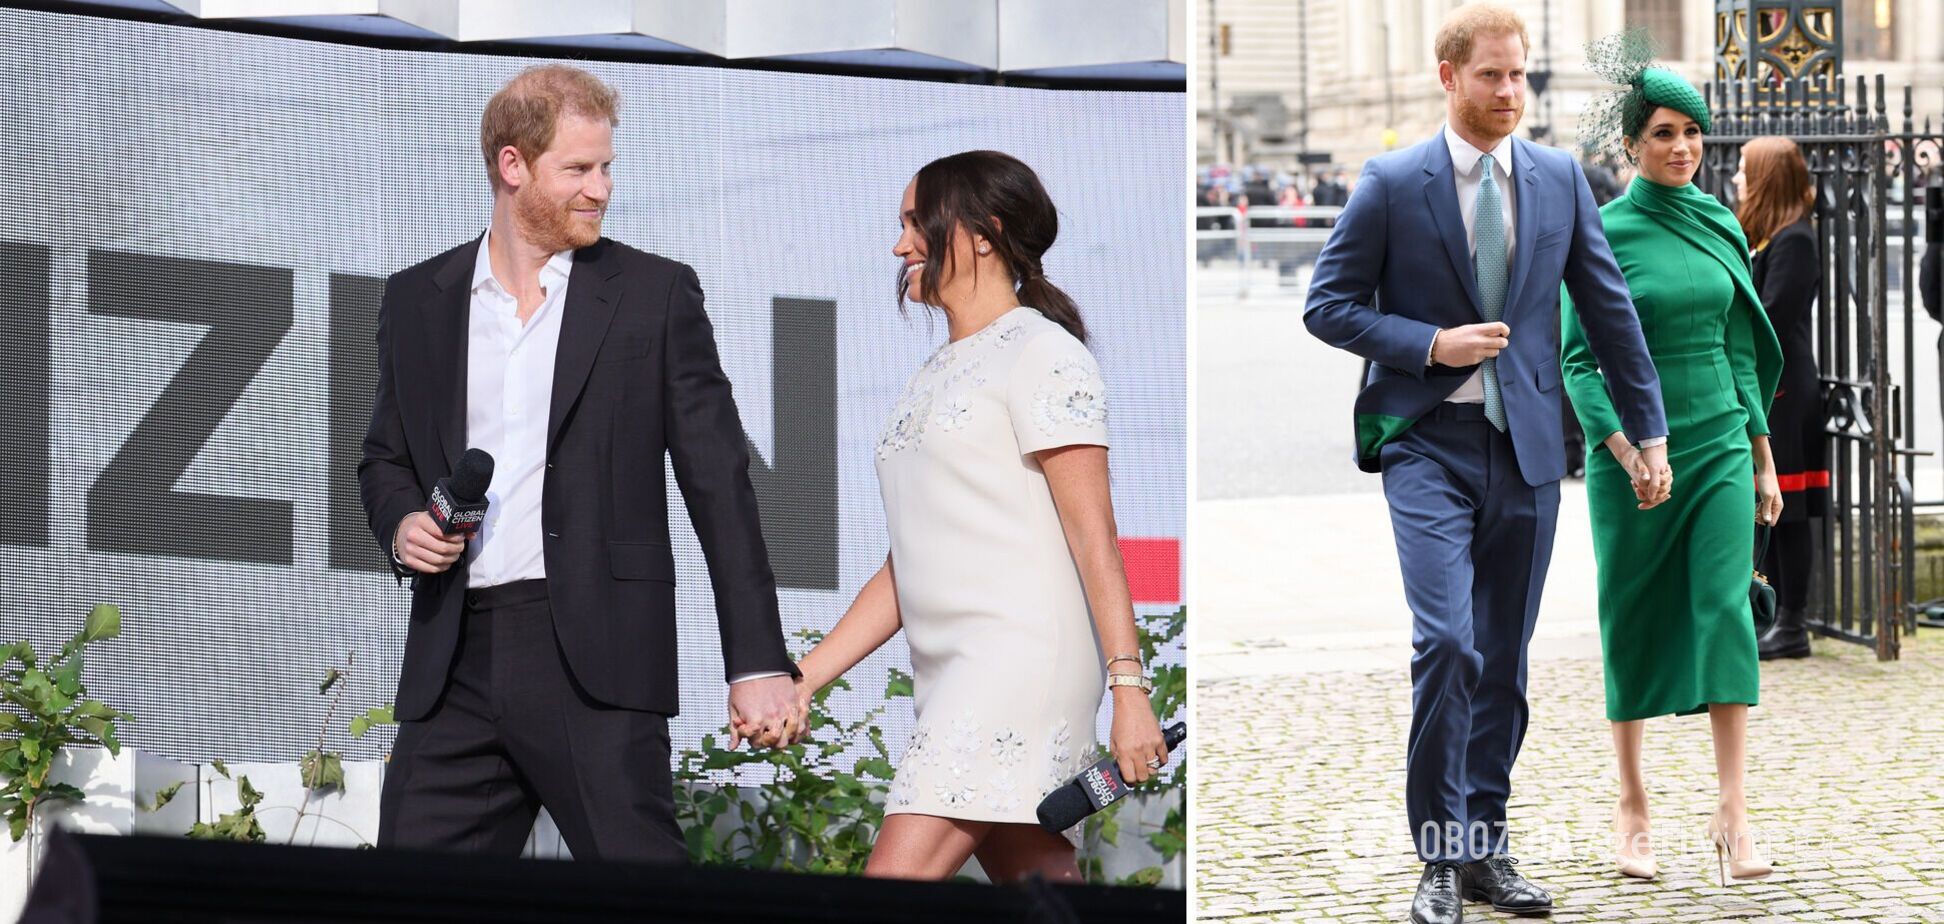 Эксперт по языку тела объяснил, почему Меган Маркл и принц Гарри всегда держатся за руки